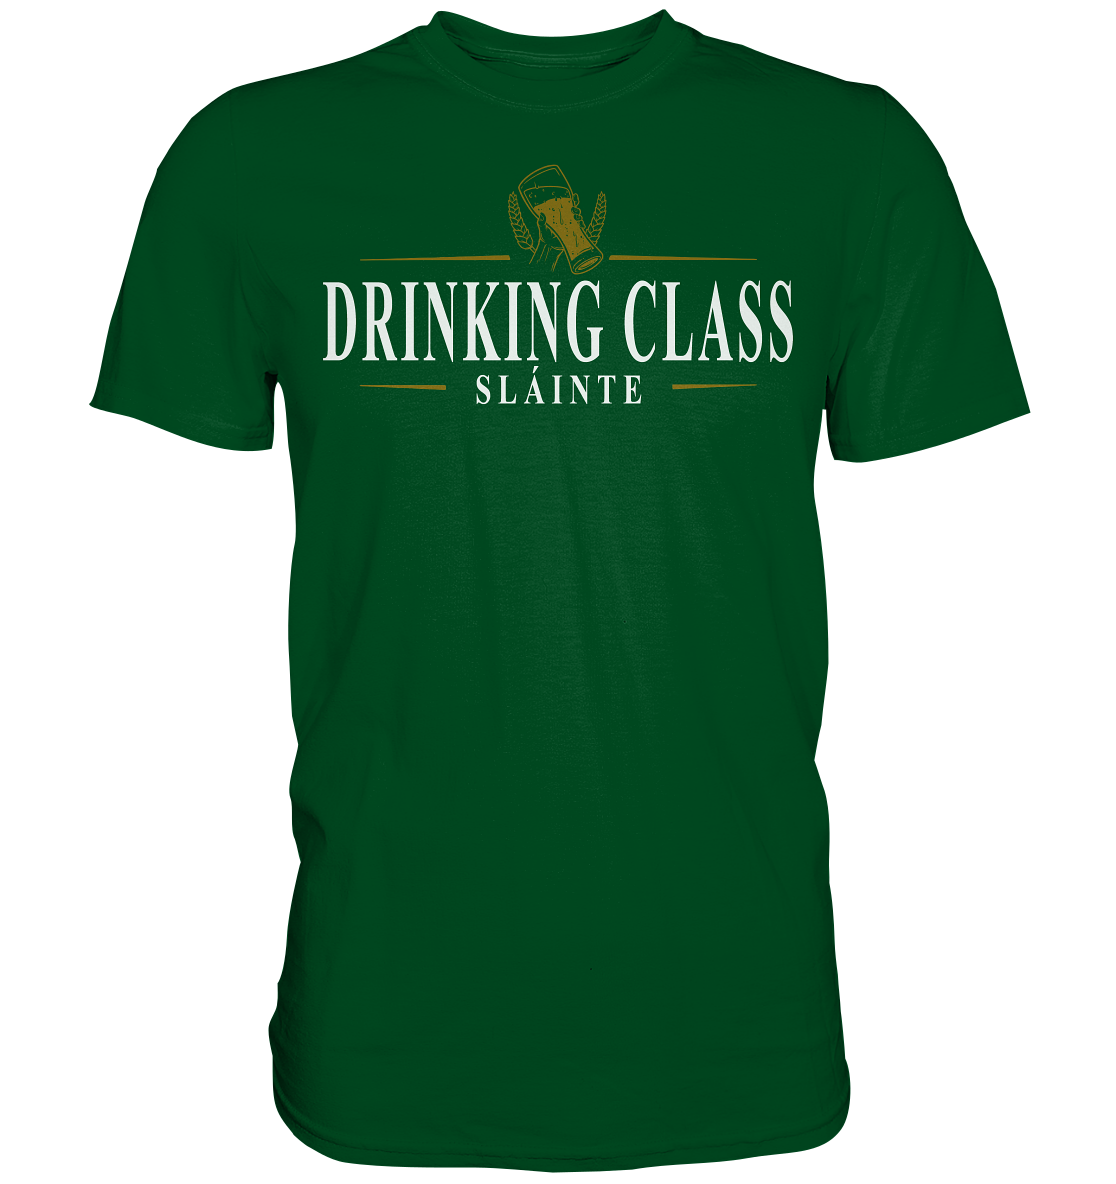 Drinking Class "Sláinte" - Premium Shirt